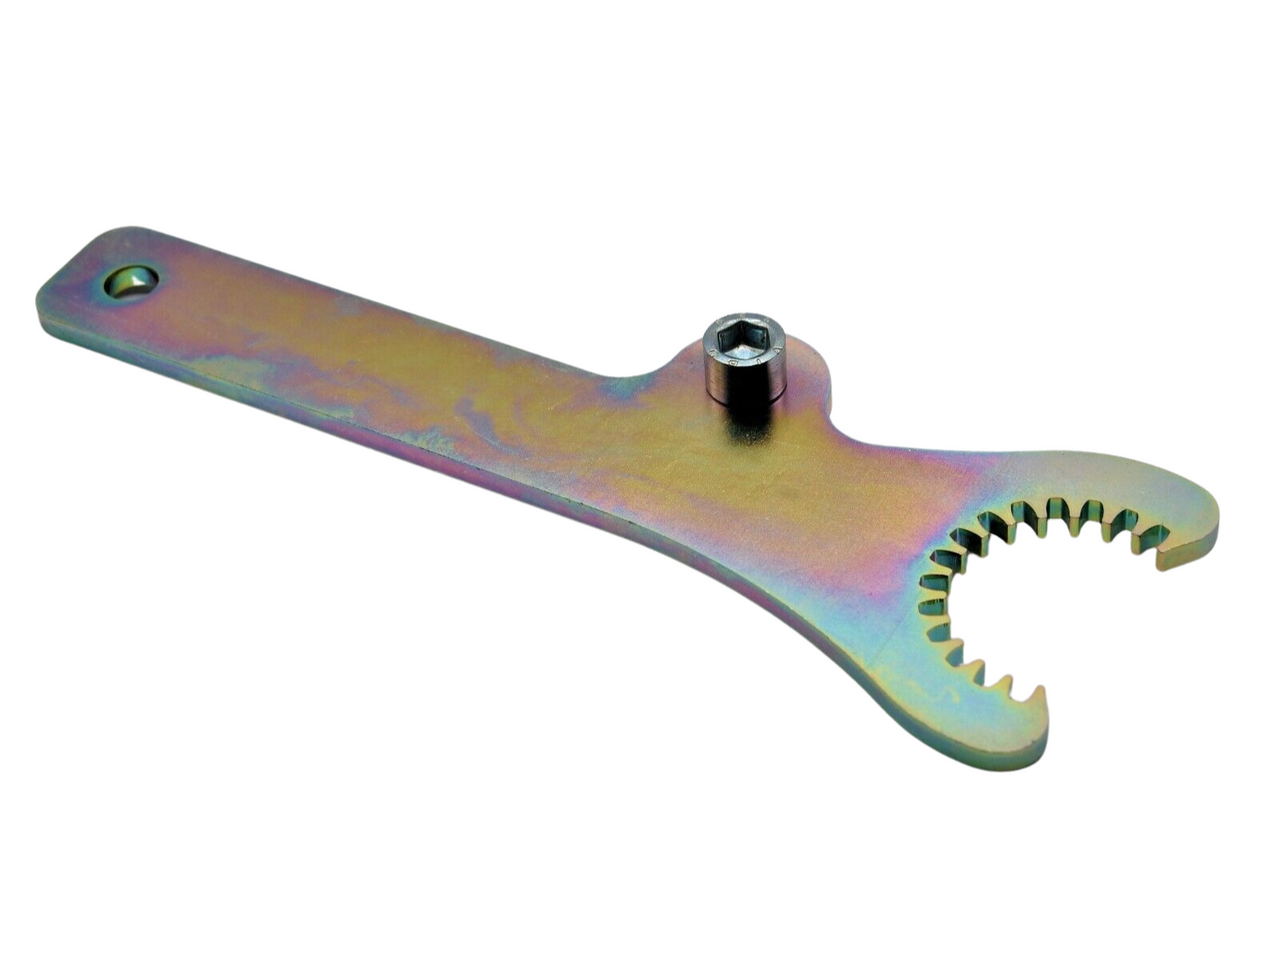 KTM Primary Gear Holding Tool (46mm diameter 23 teeth)